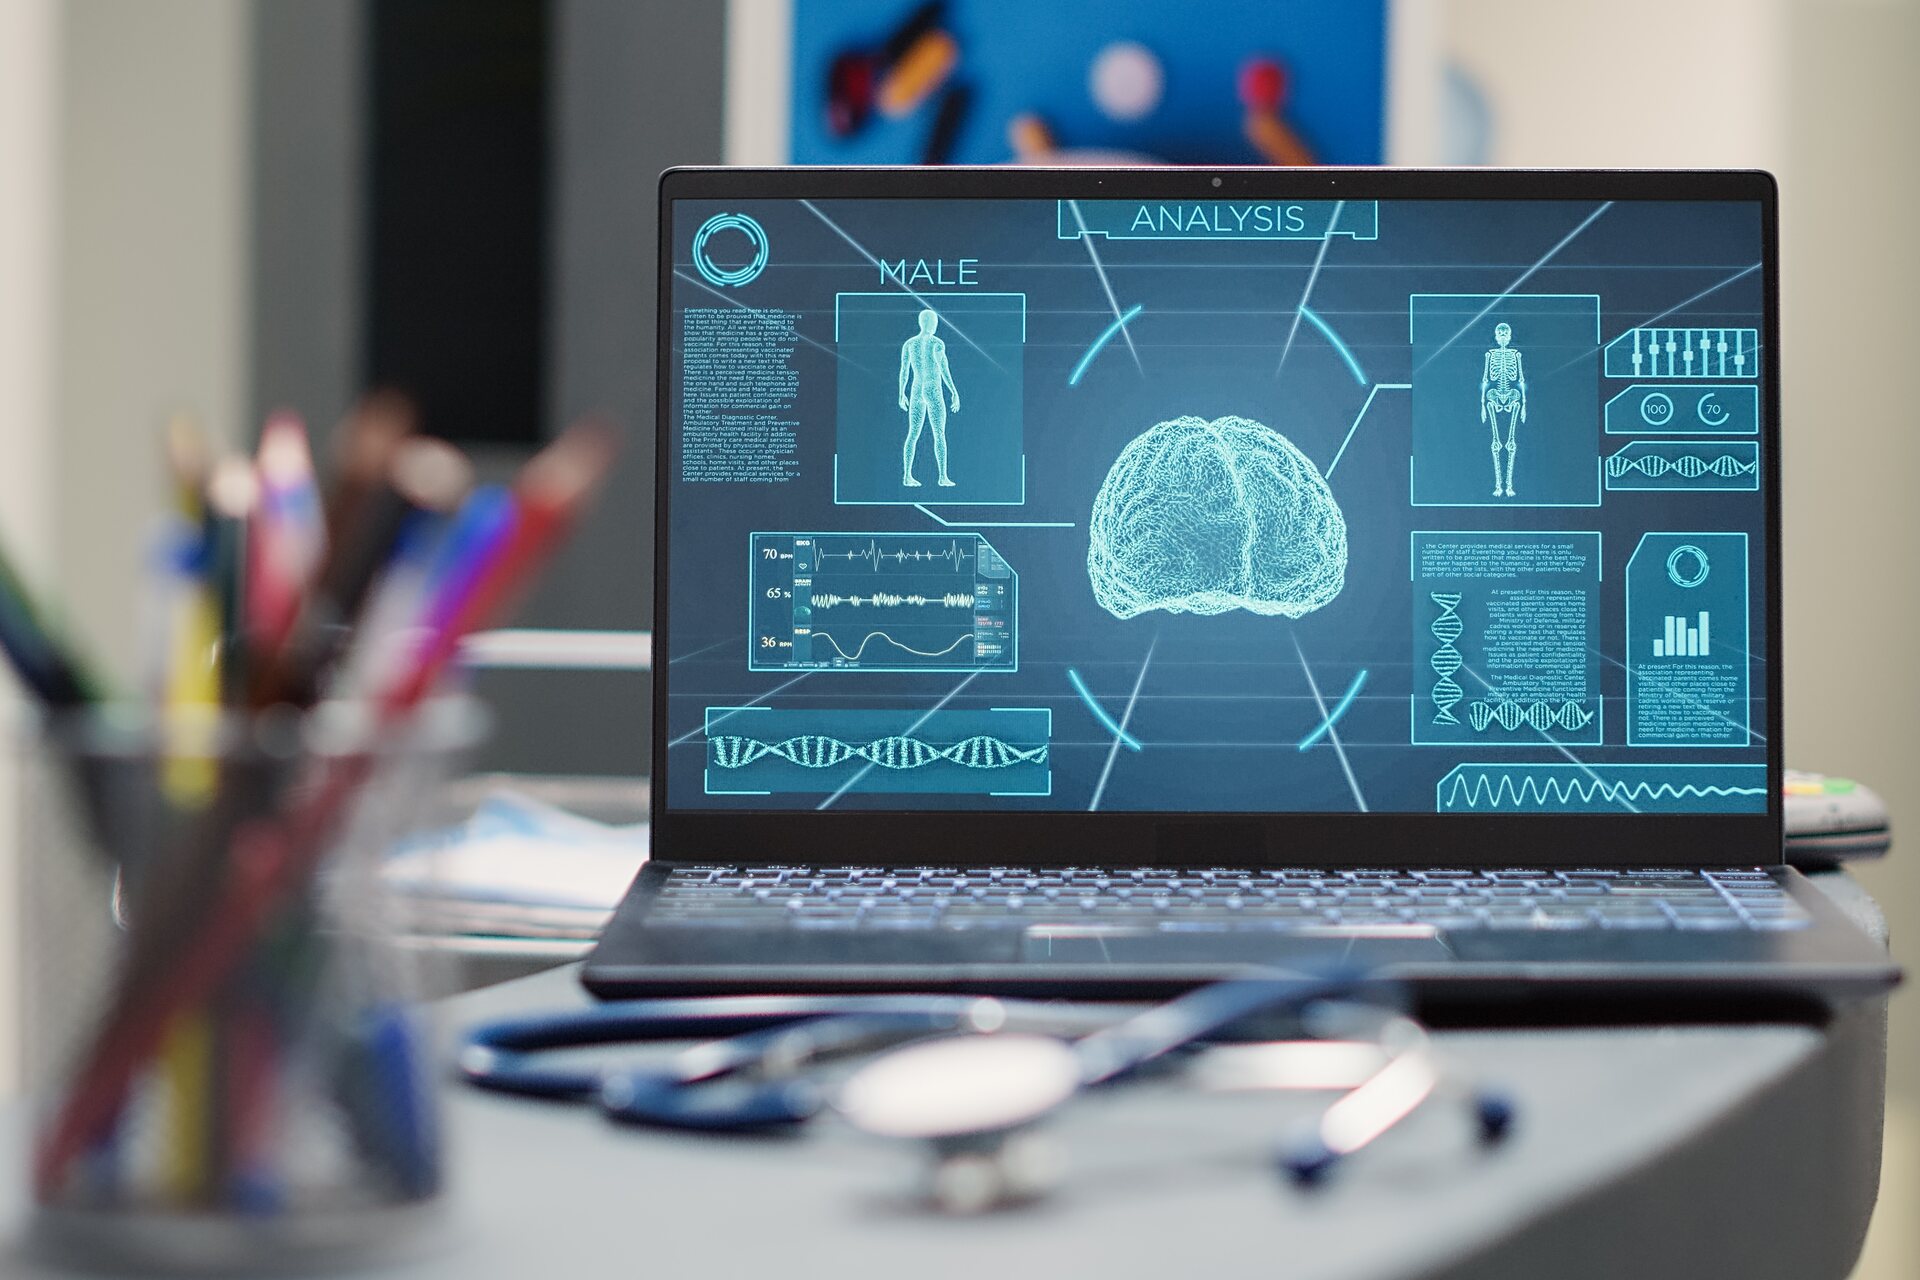 Hologramet: falë avatarëve dhe teknologjive të AI, demokratizimi i aksesit në kujdesin mjekësor është i imagjinueshëm